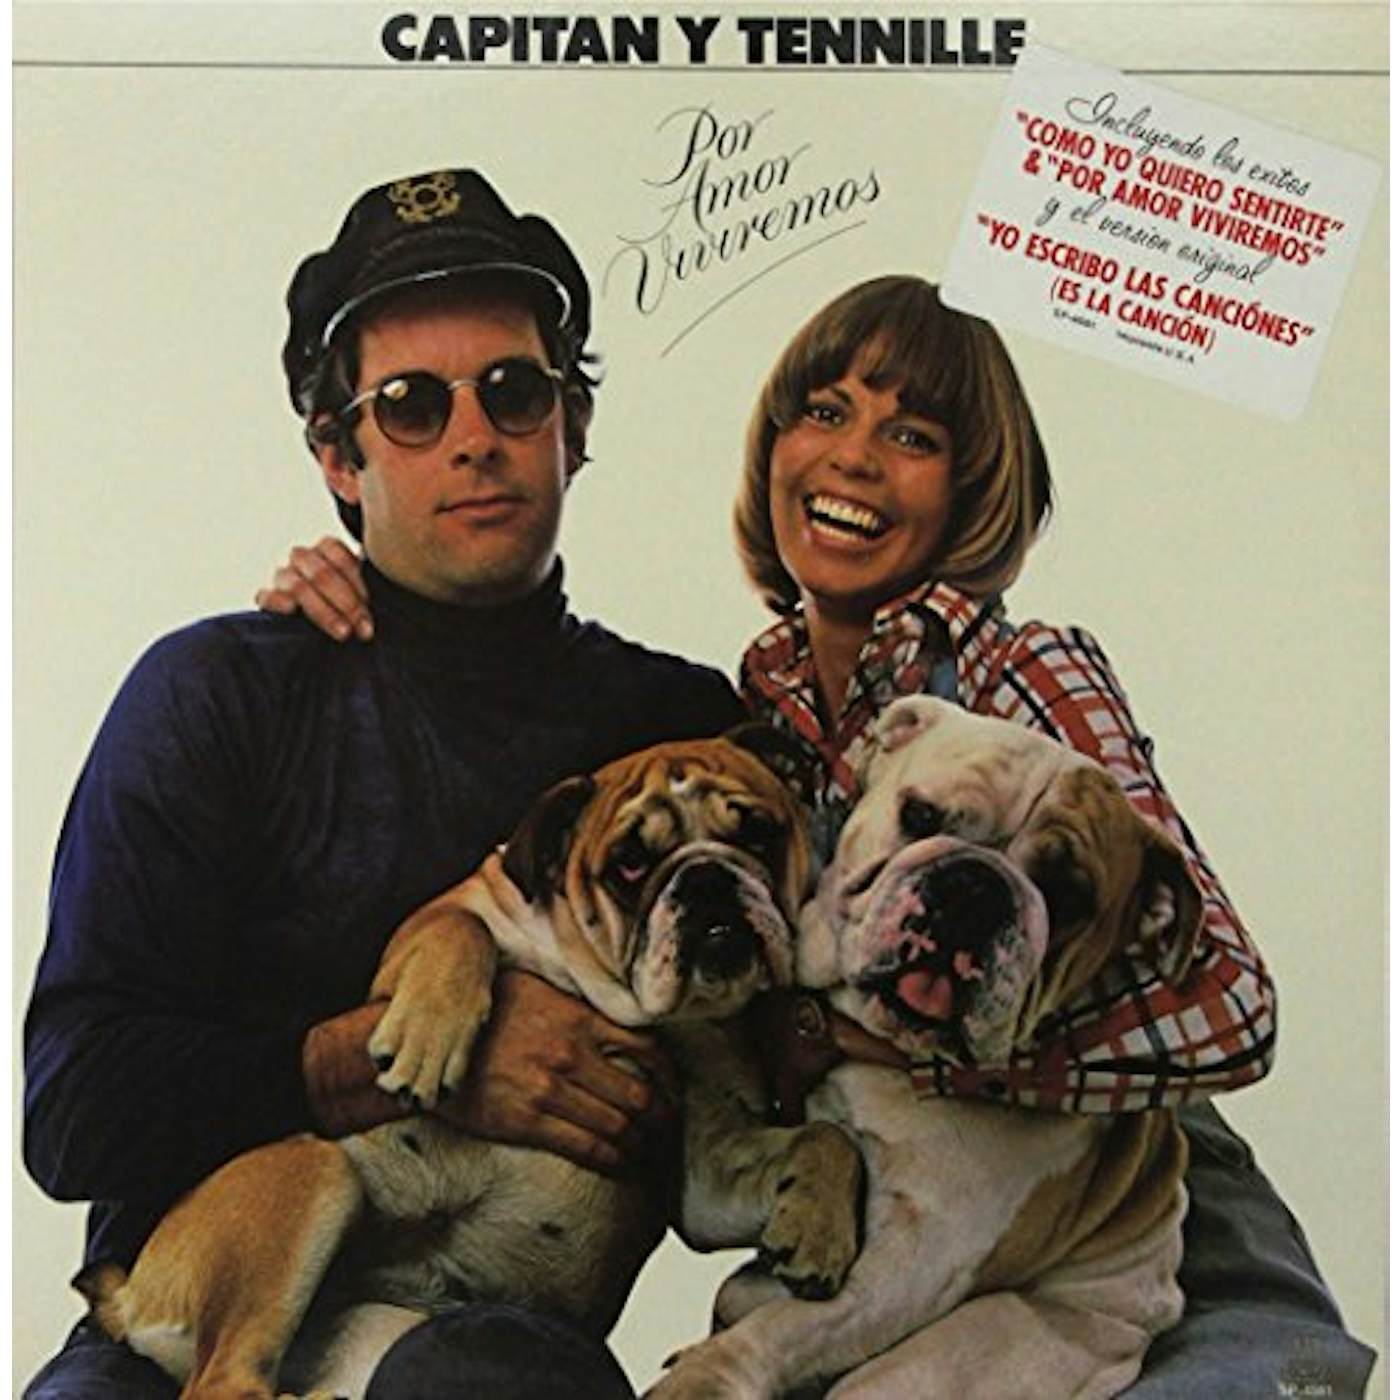 Captain & Tennille POR AMOR VIVIREMOS Vinyl Record